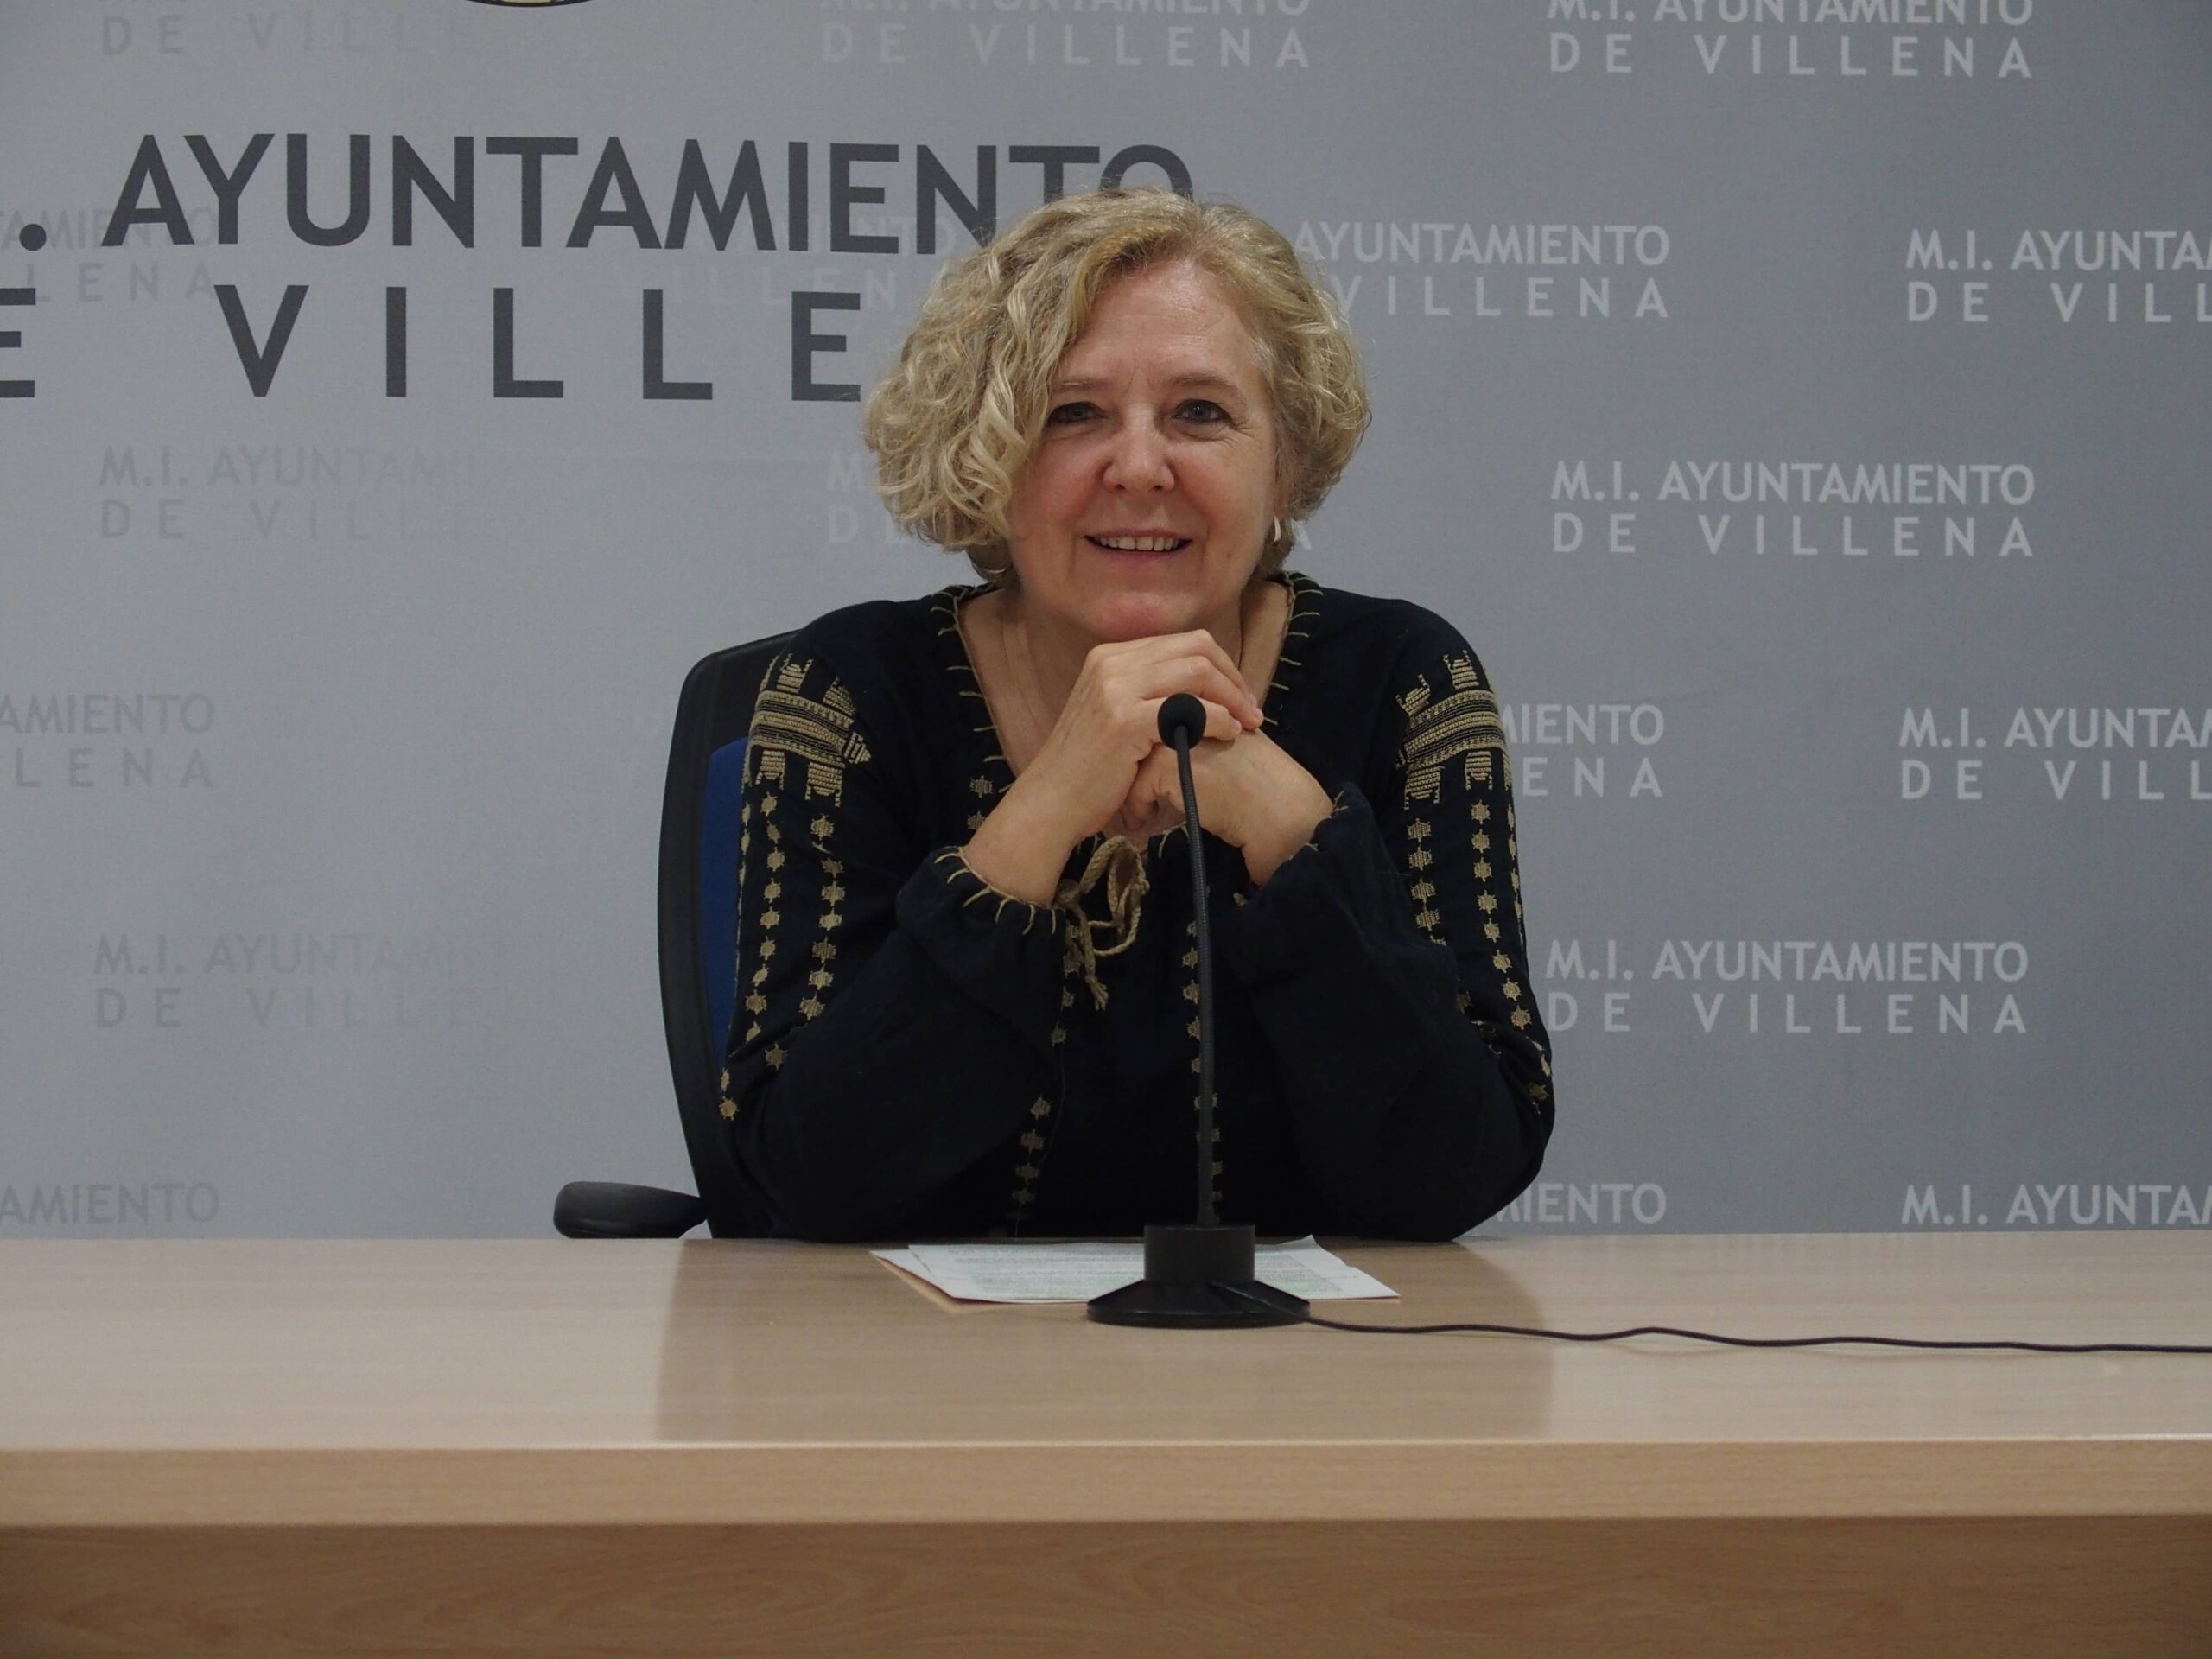 Convenio con la Generalitat Valenciana para la rehabilitación y renovación urbana